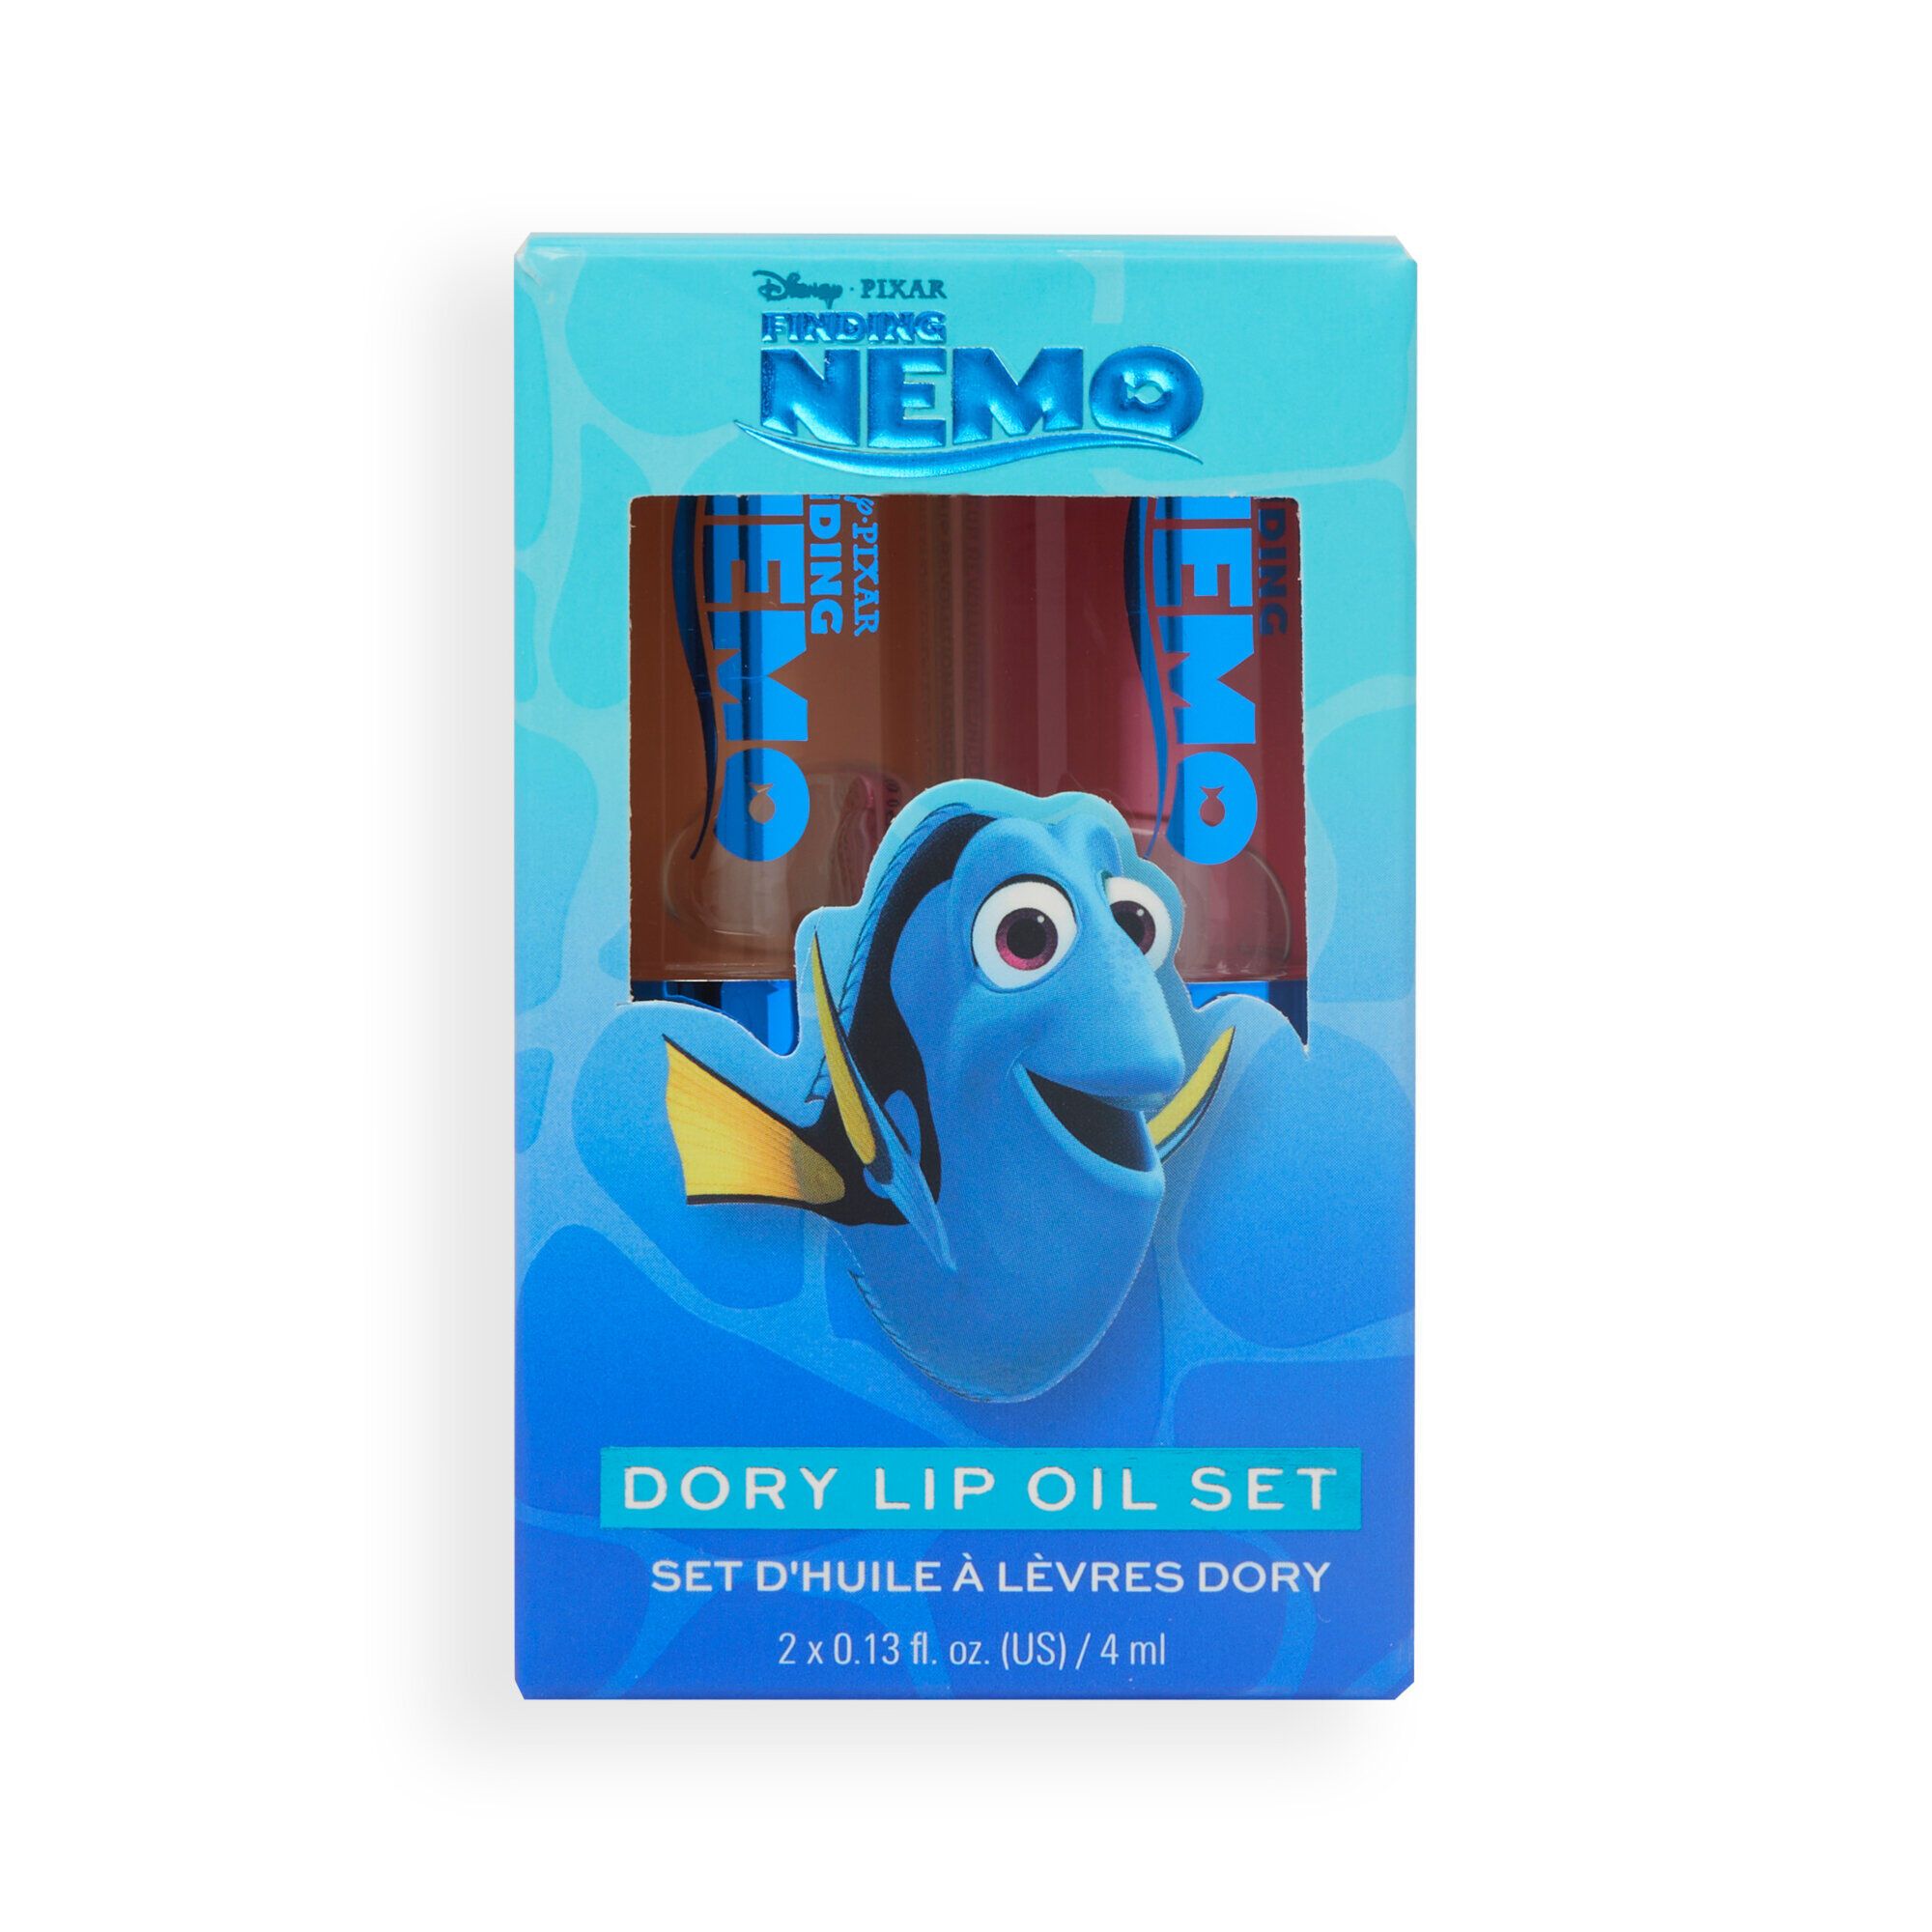 Finding Nemo - Dory Lip Oil Set